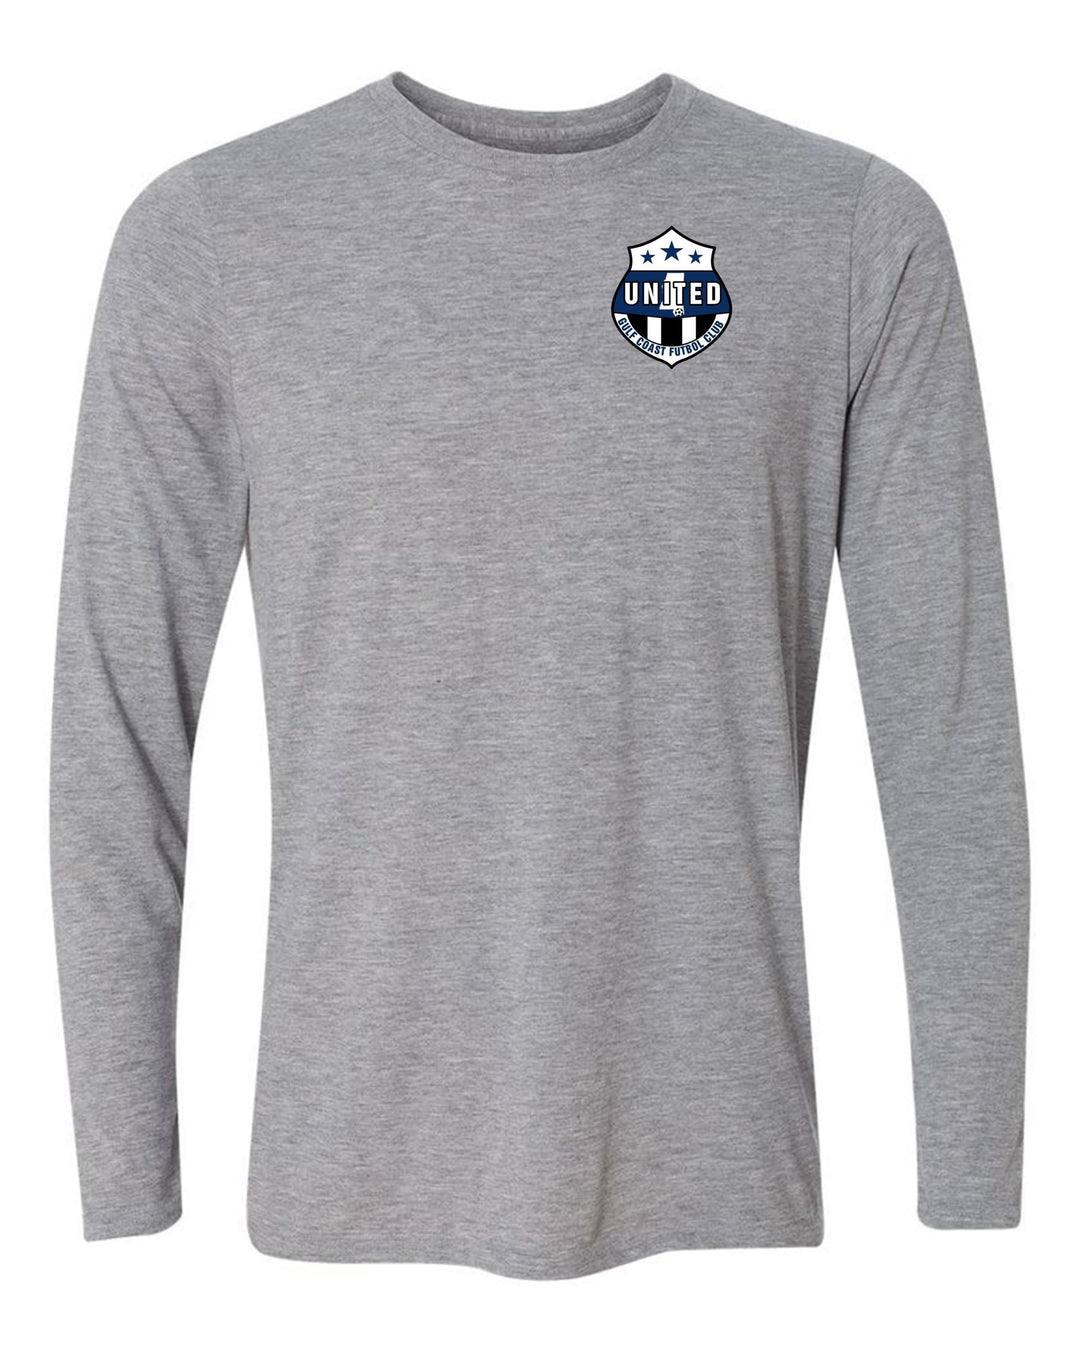 Gulf Coast United LS T-shirt - Royal or Sport Grey Gulf Coast United Spiritwear SPORT GREY MENS MEDIUM - Third Coast Soccer